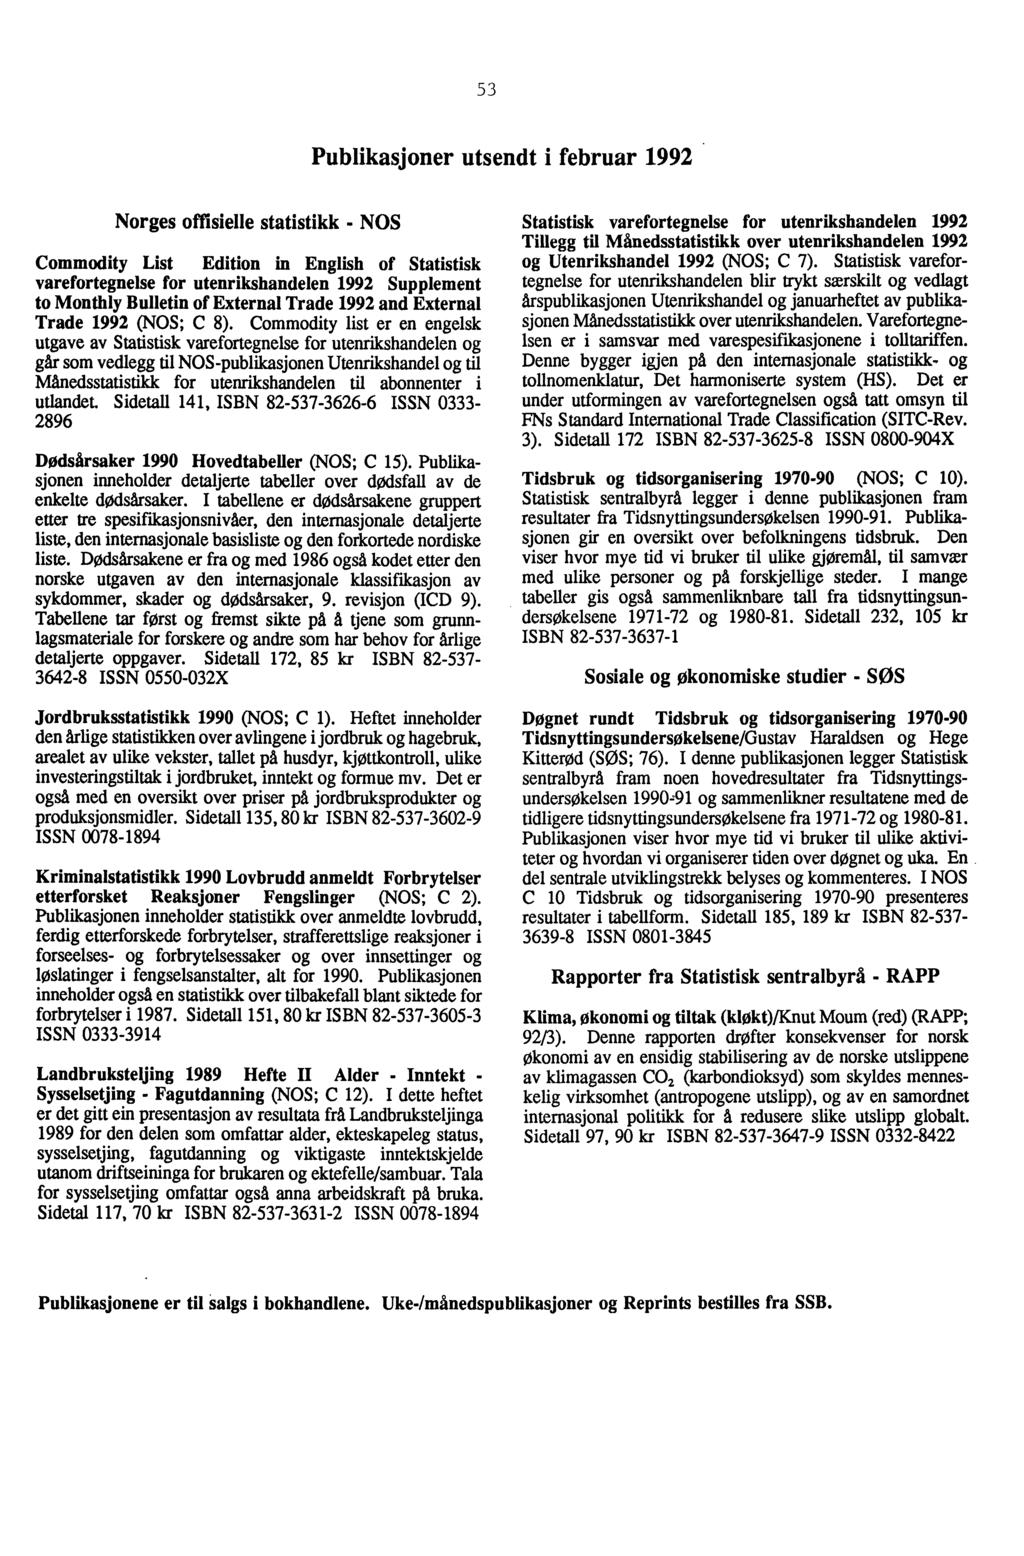 53 Publikasjoner utsendt i februar 1992 Norges offisielle statistikk - NOS Commodity List Edition in English of Statistisk varefortegnelse for utenrikshandelen 1992 Supplement to Monthly Bulletin of